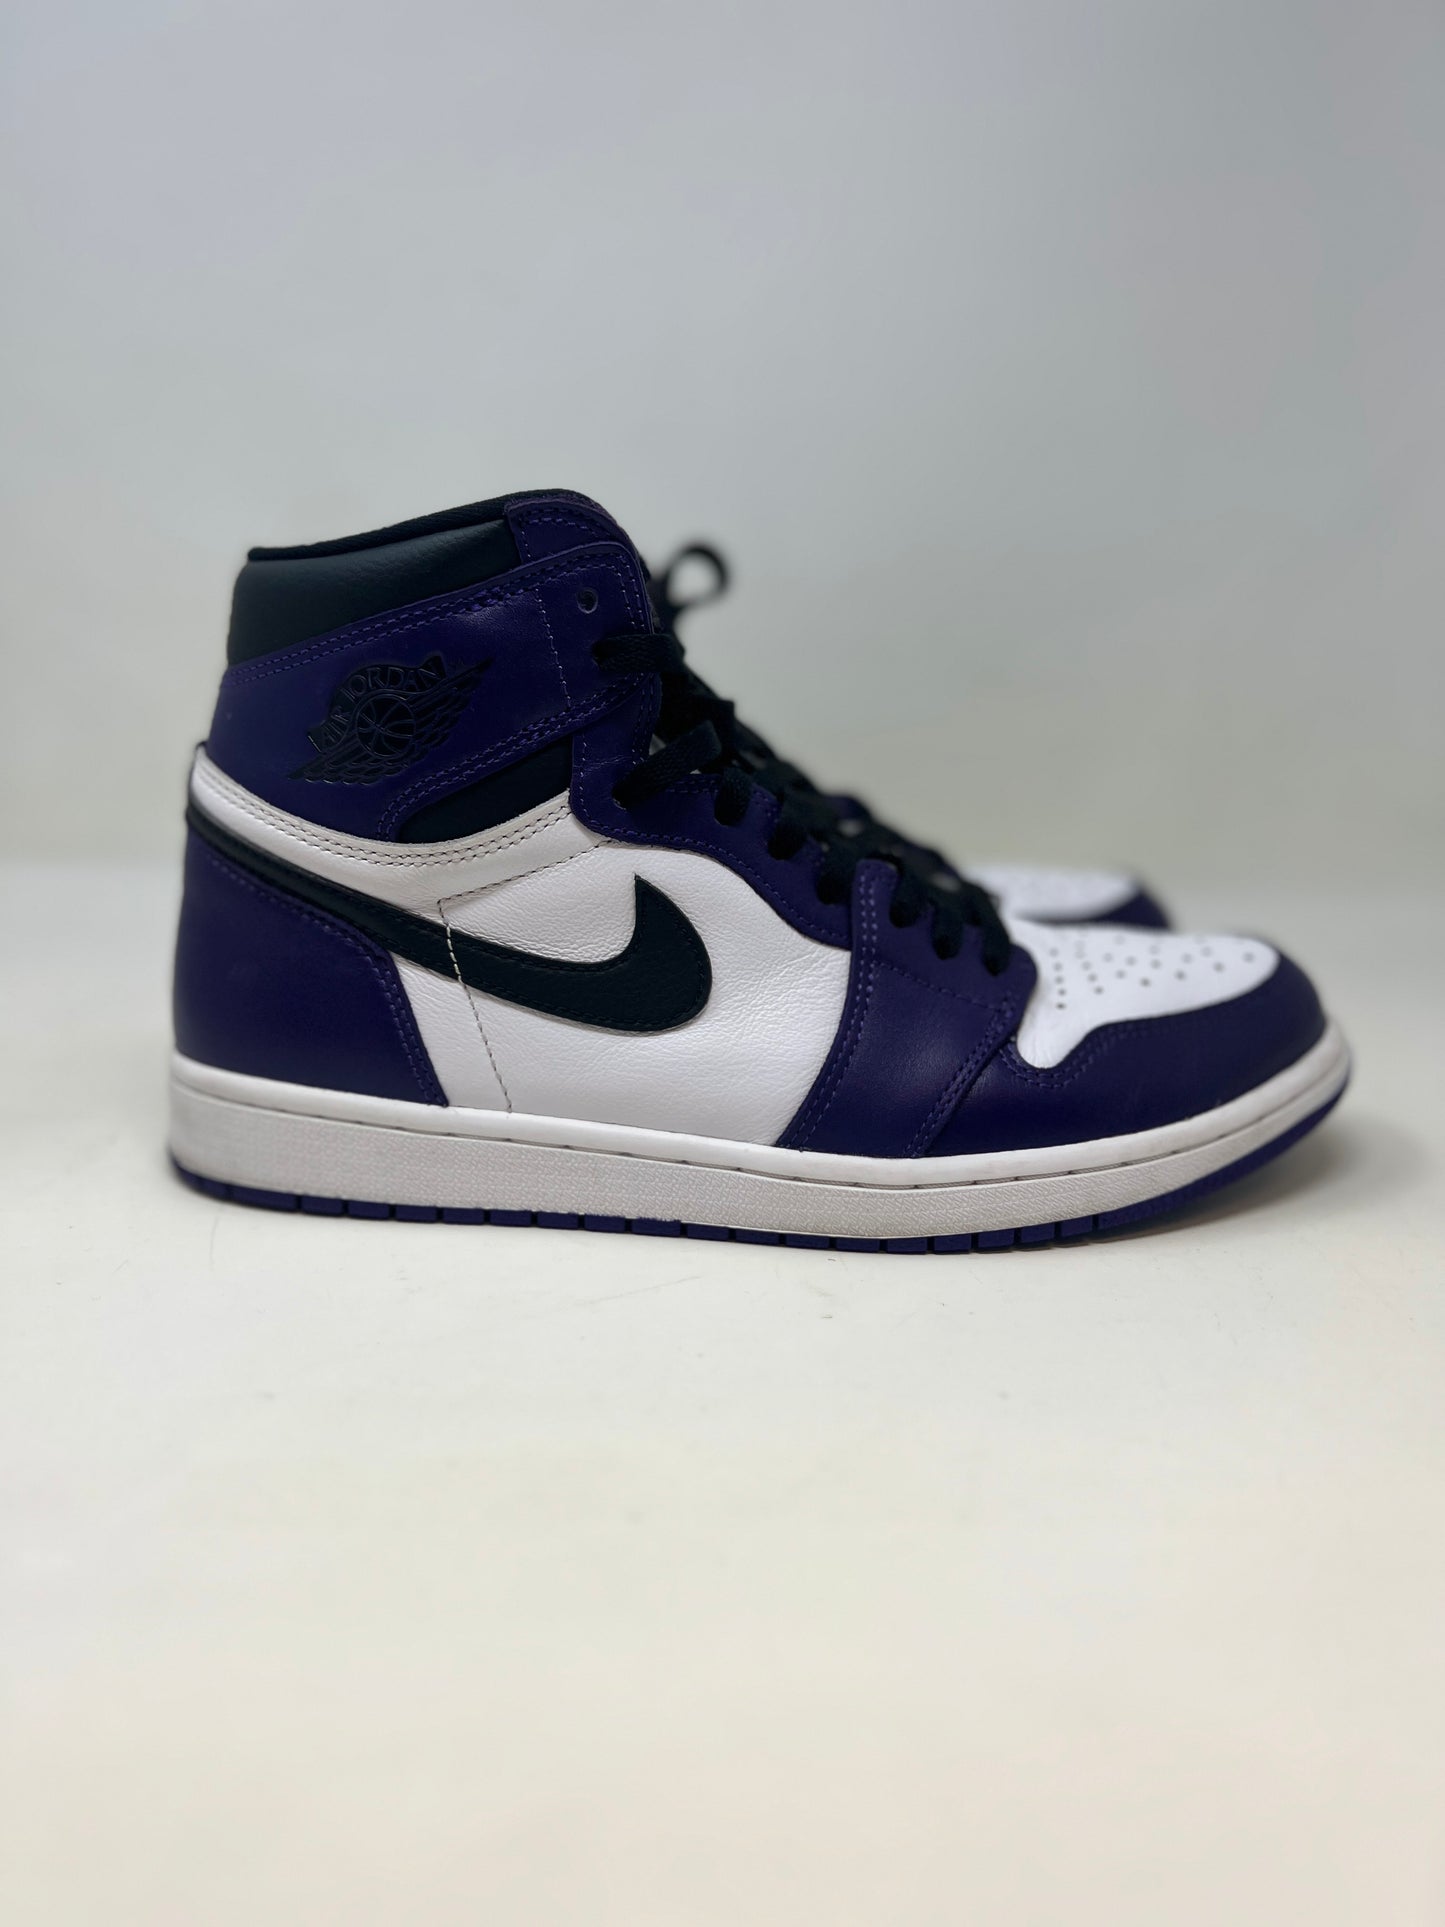 Nike Air Jordan 1 High OG ‘Court Purple’